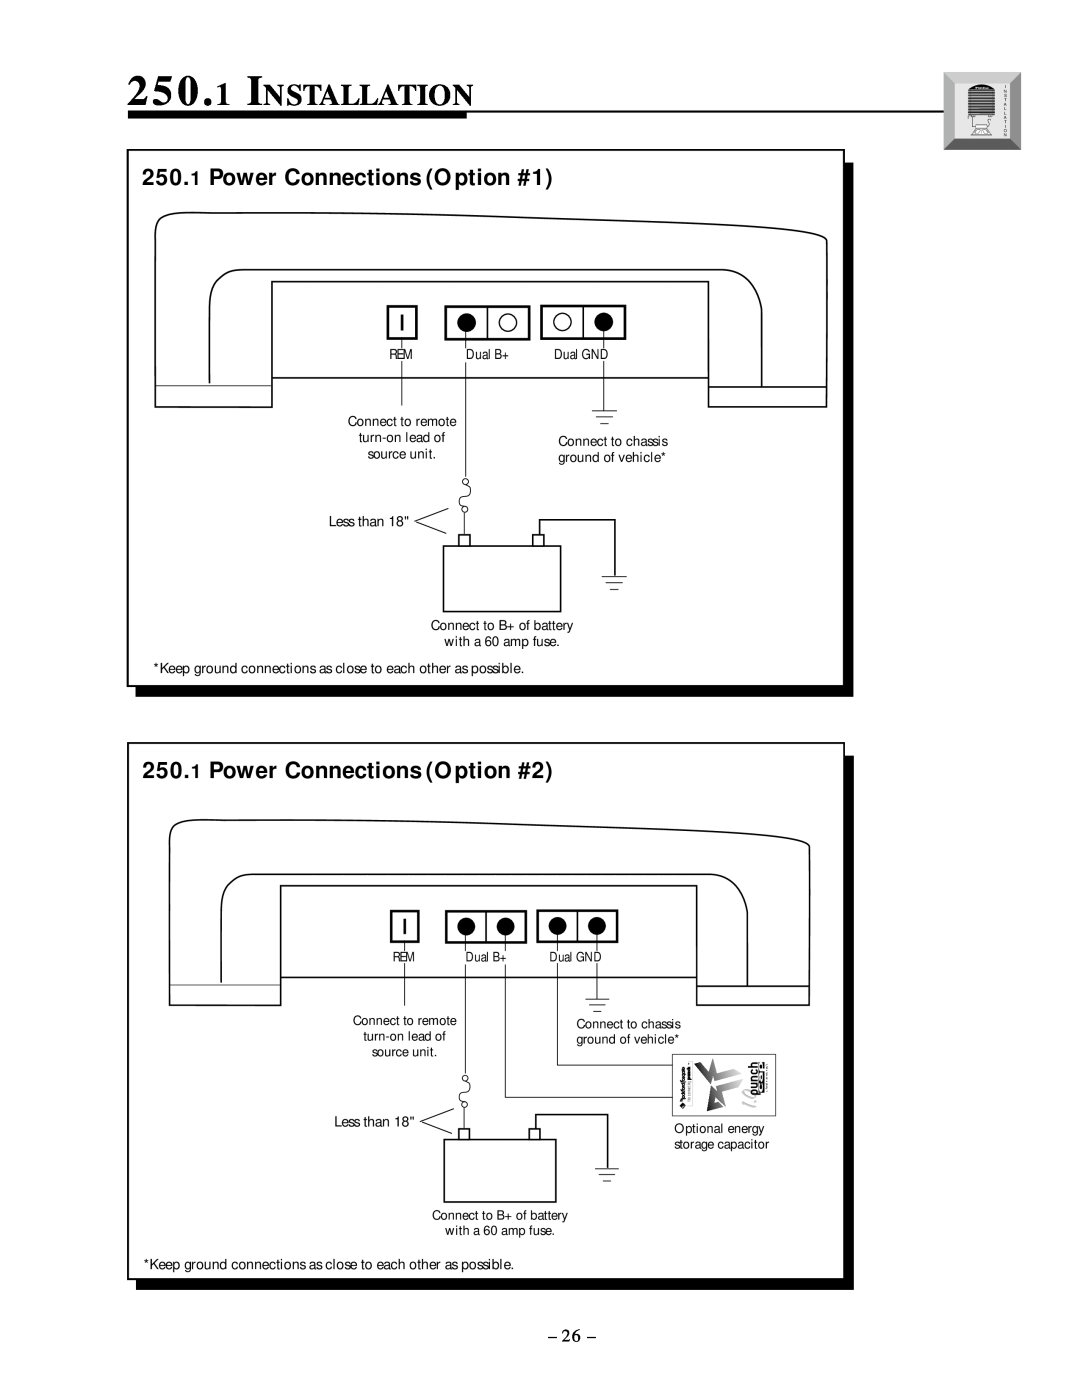 Rockford Fosgate 250.1 manual Installation, Power Connections Option #1, Power Connections Option #2 